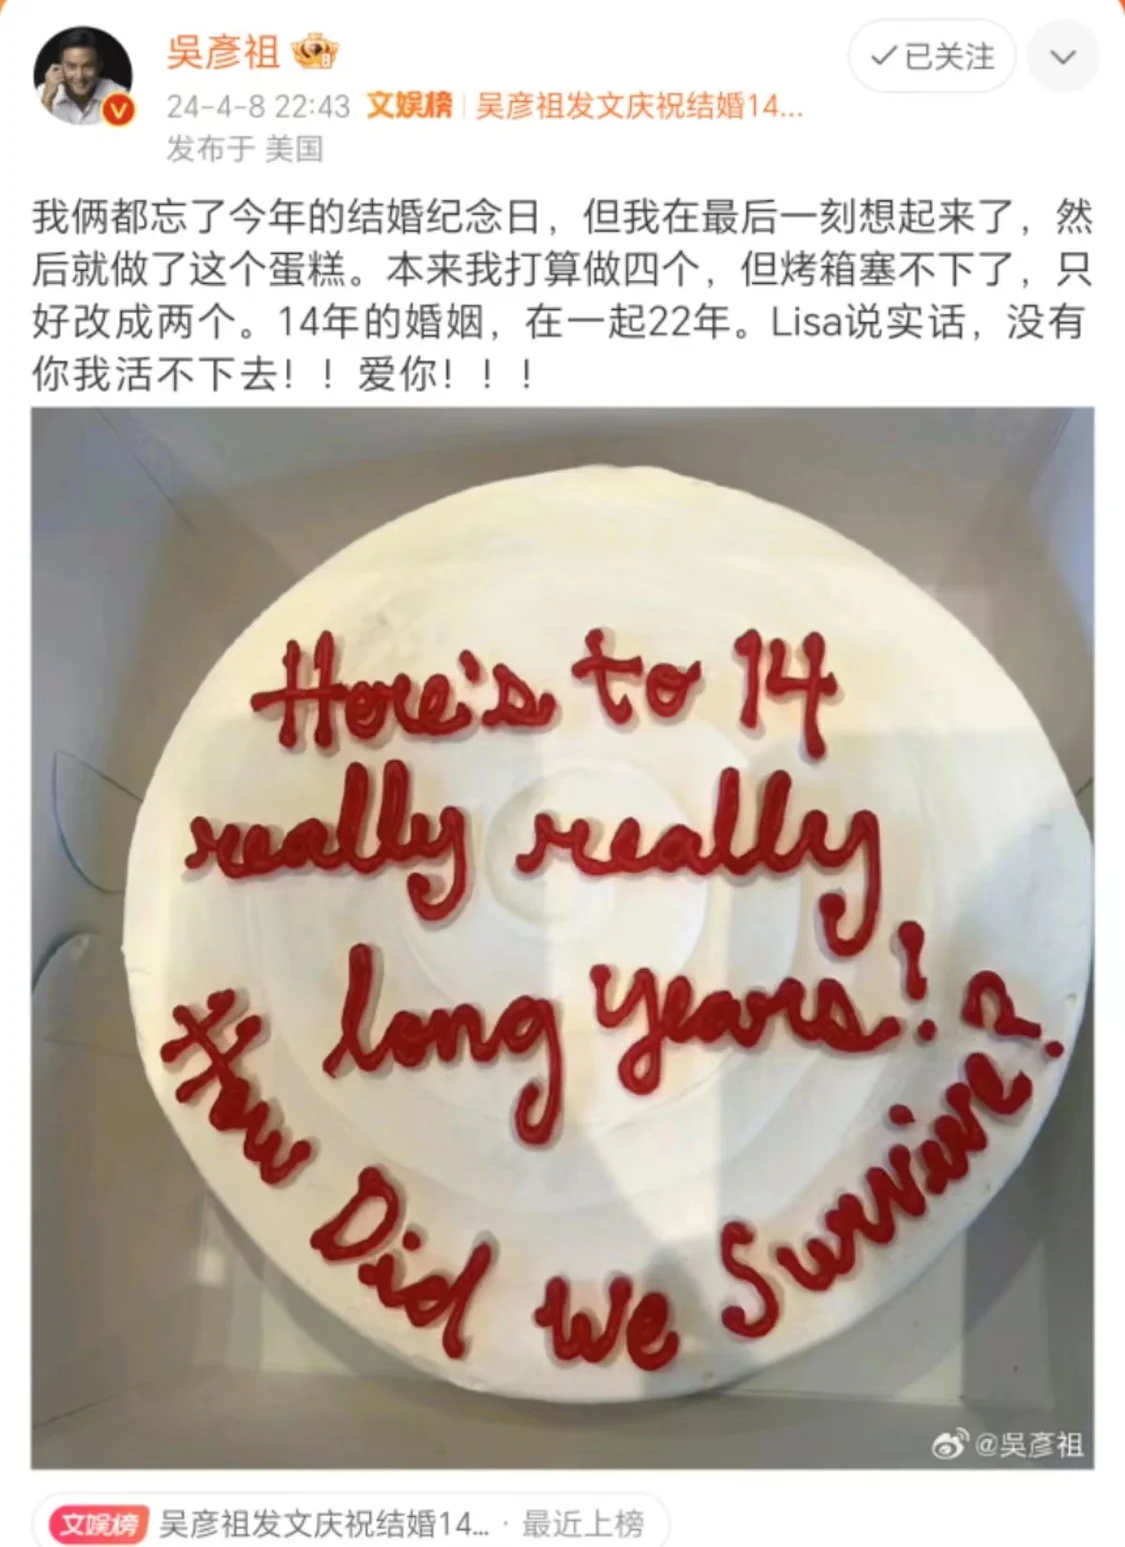 吳彥祖紀念結婚14周年 親手做蛋糕示愛Lisa